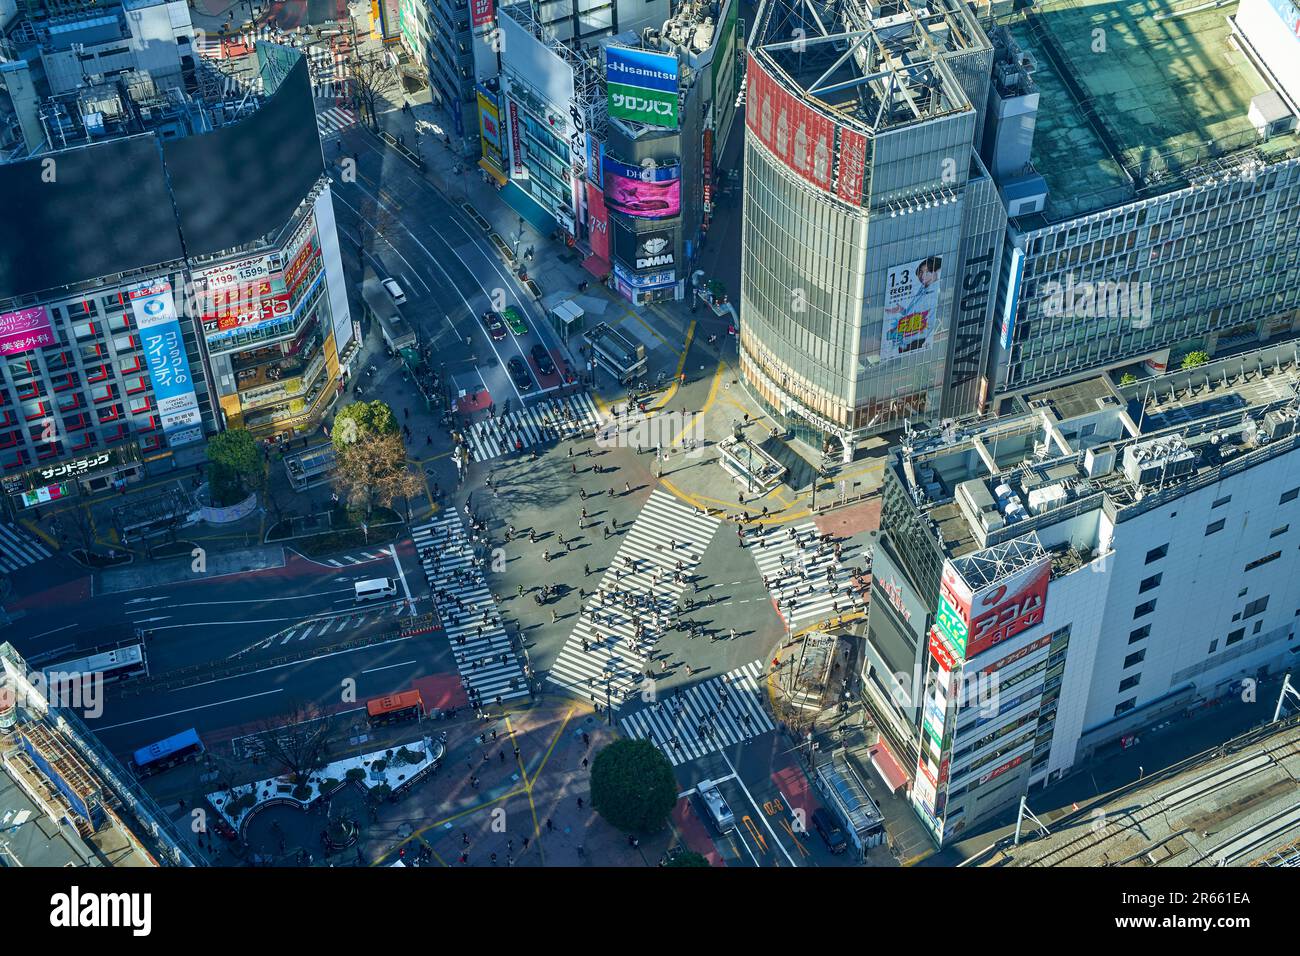 Streetscape of Shibuya Stock Photo